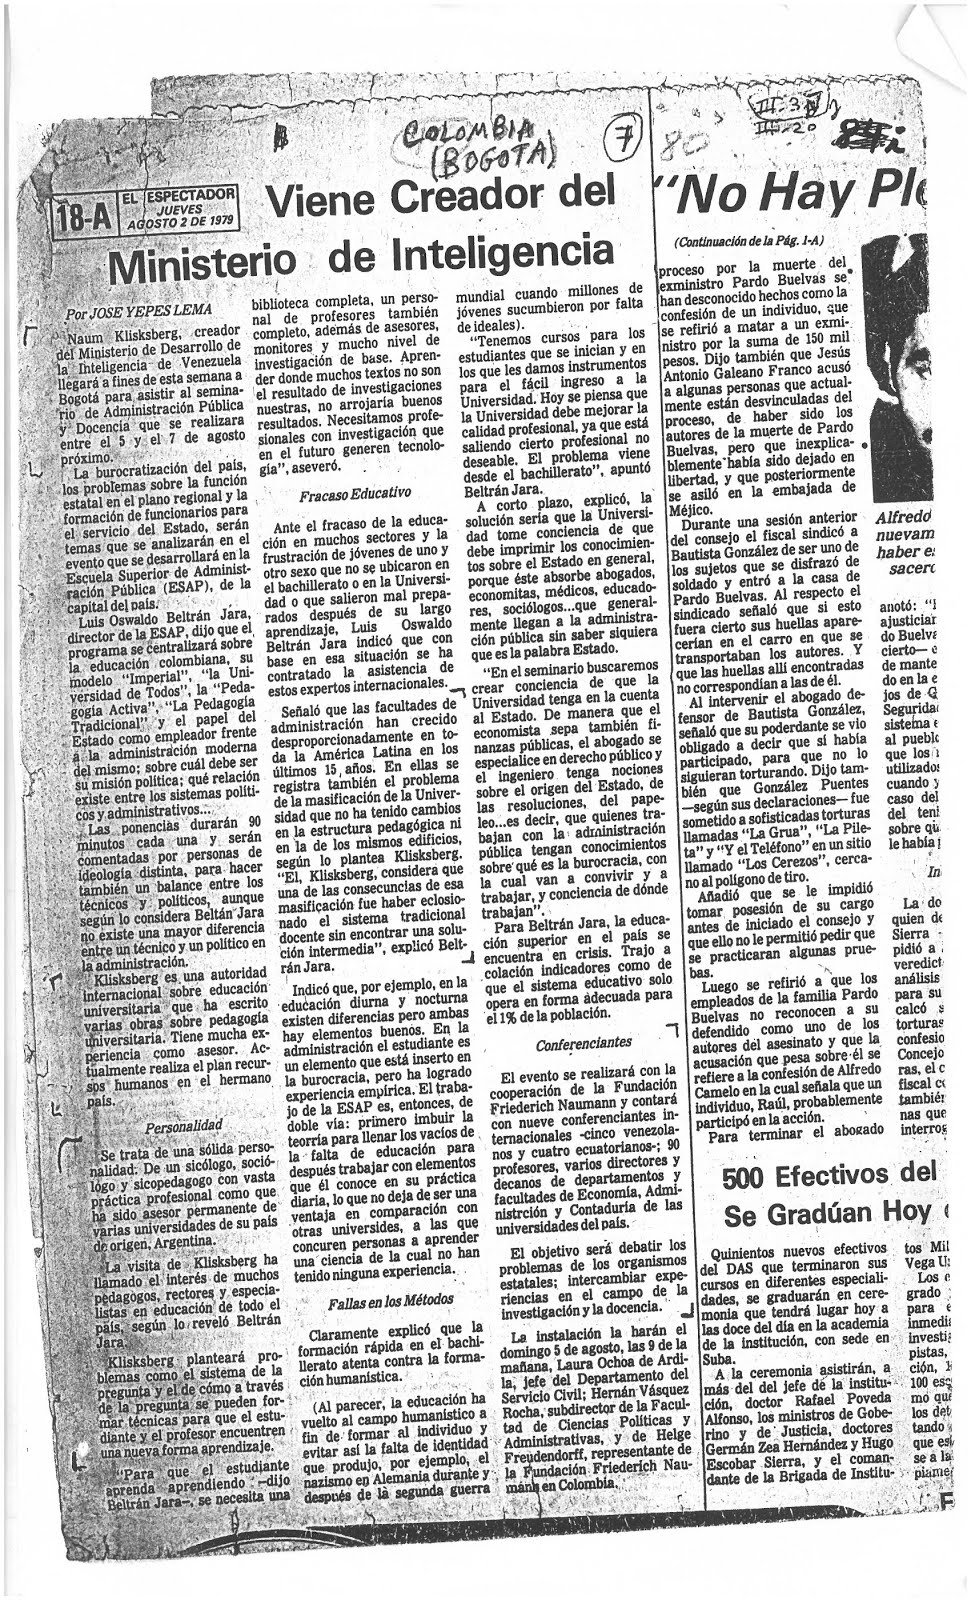 16 - Periódico de Colombia El Espectador. 02/08/1979. En ocasión de